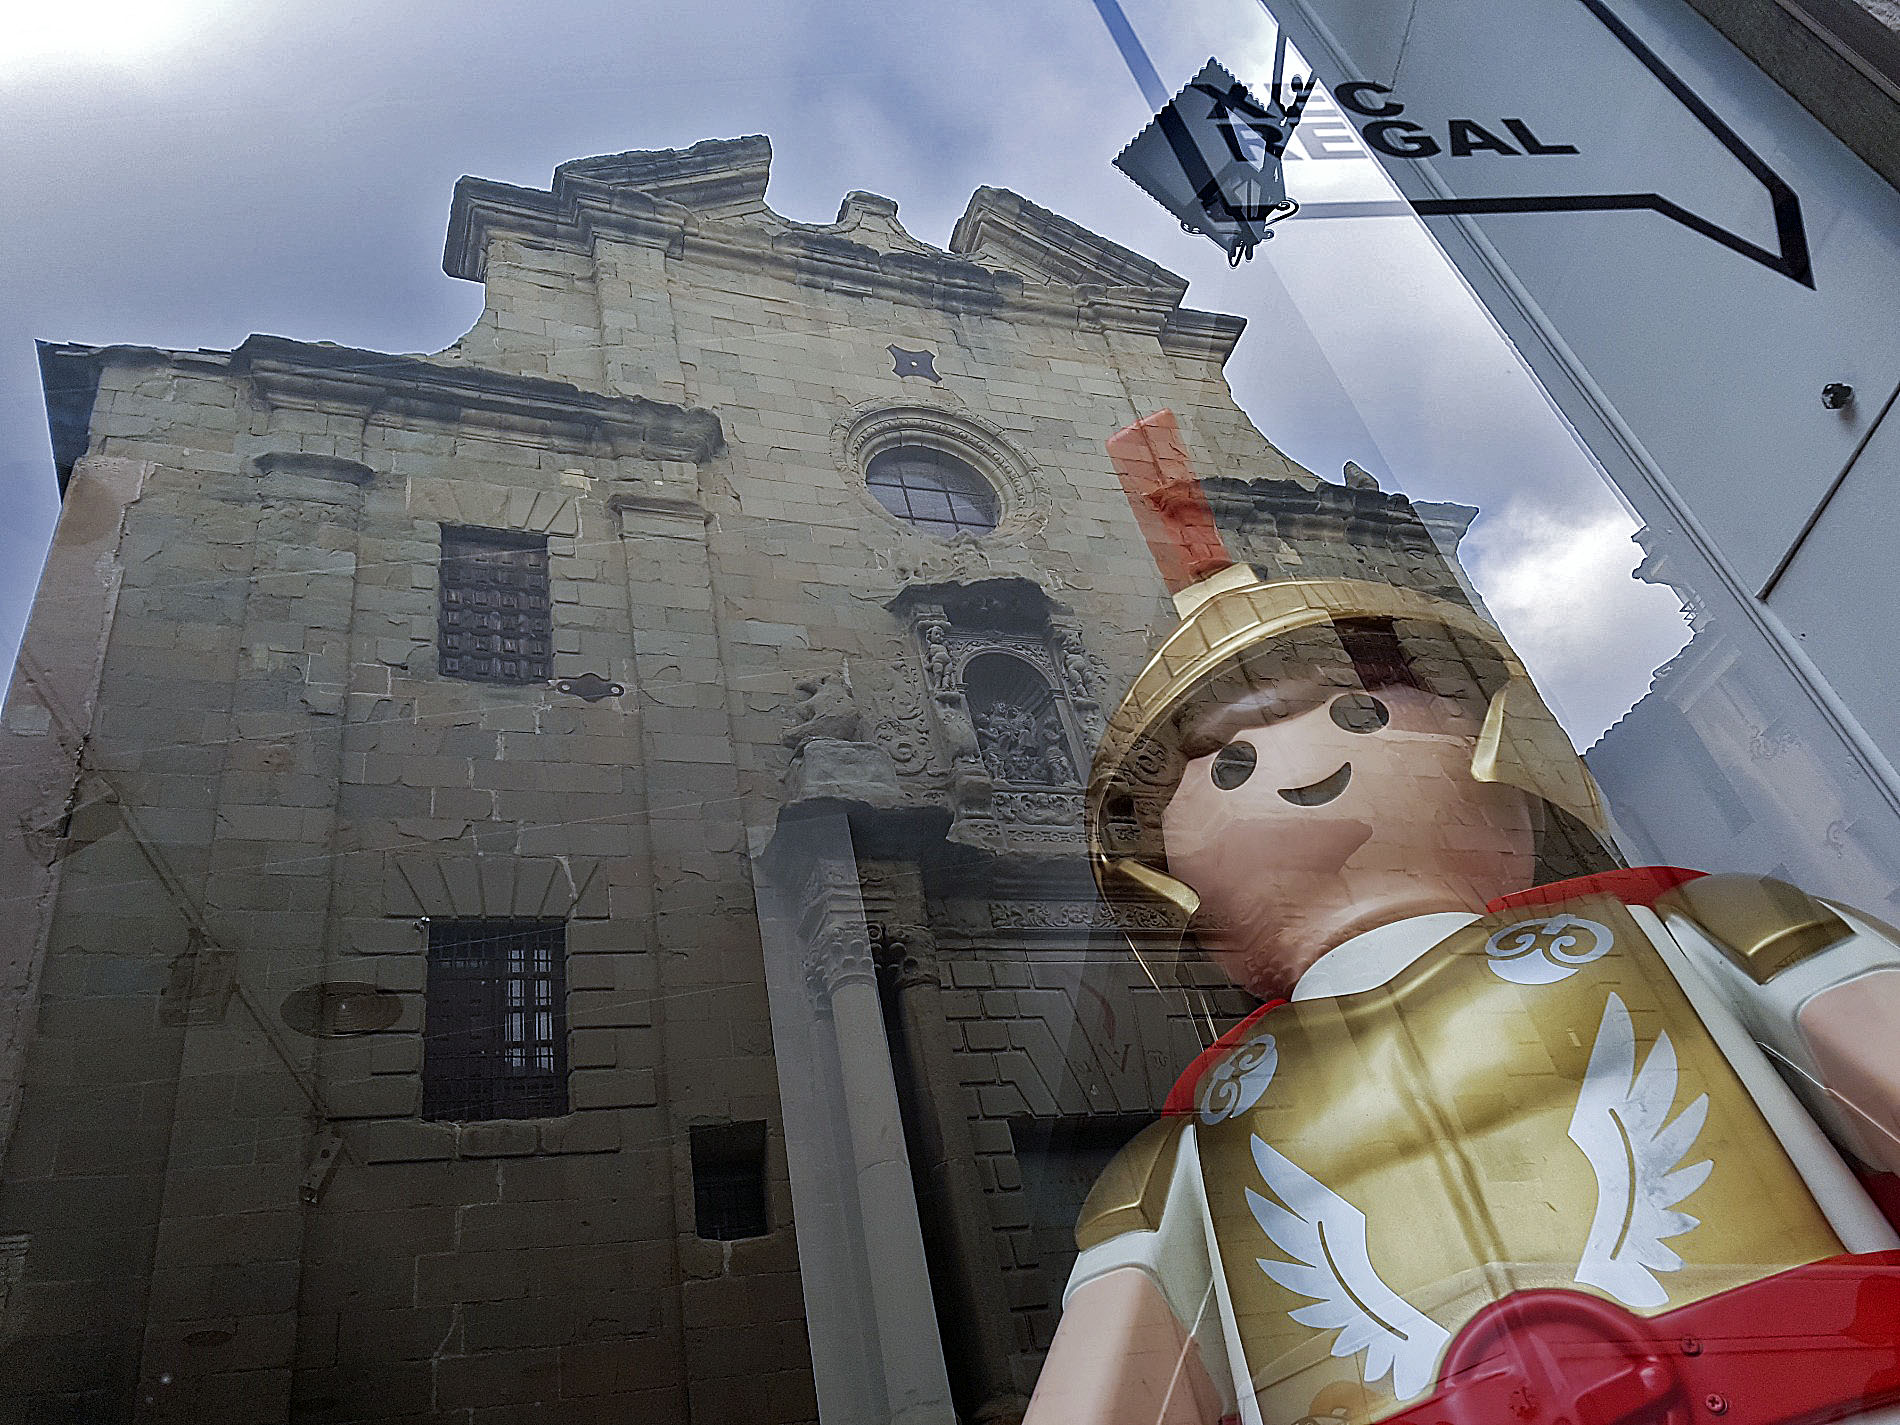 En motiu de la fira s'han instal·lat figures gegants de Playmobil en una quinzena d'aparadors de la ciutat